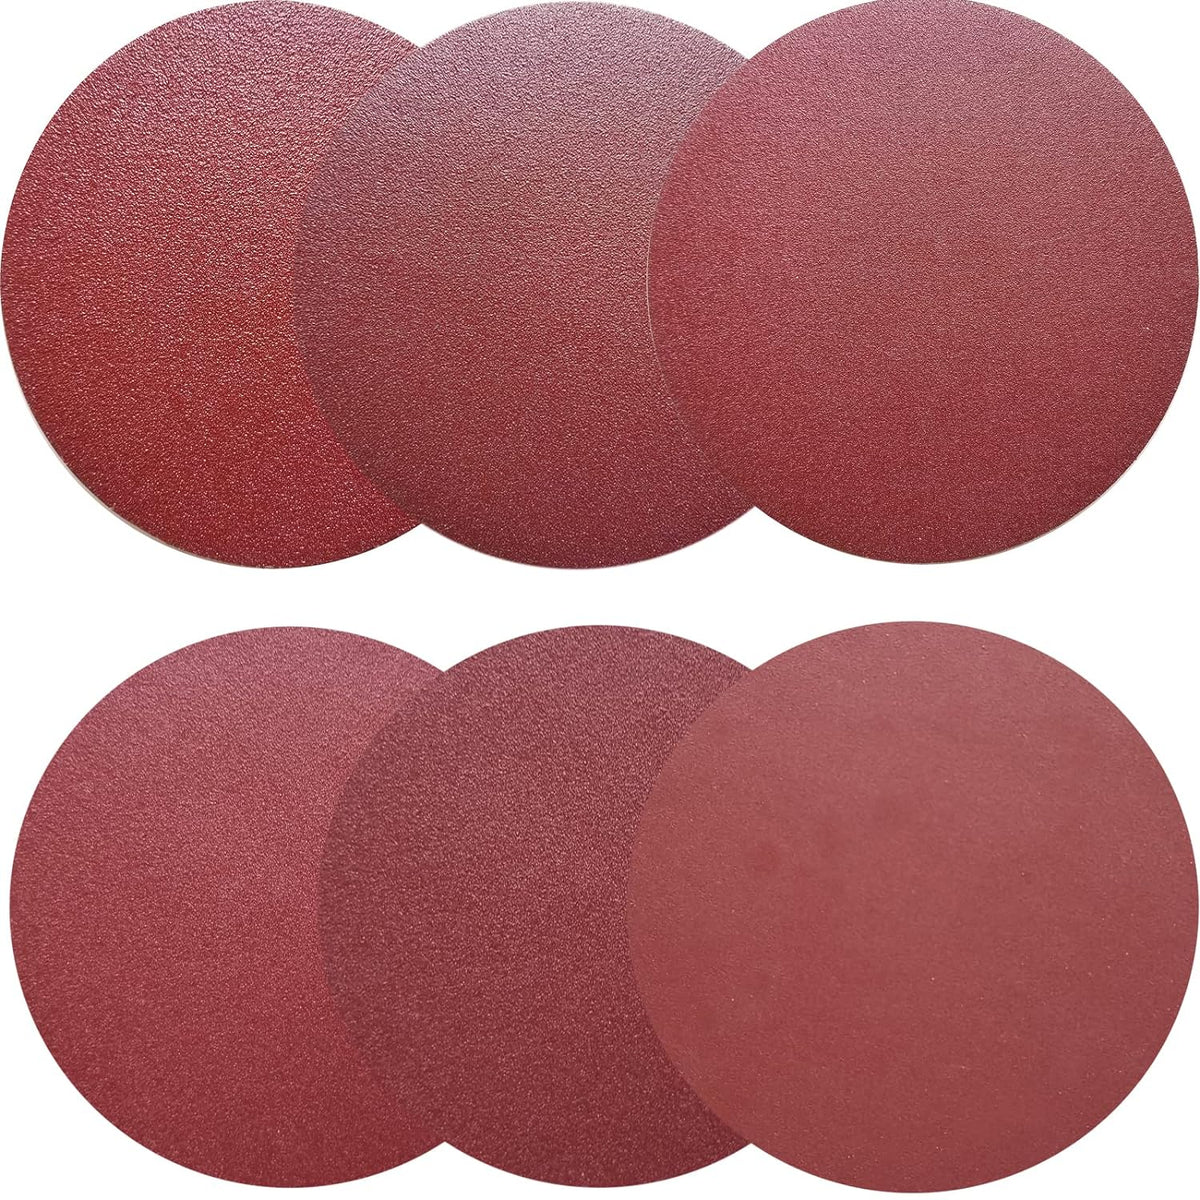 10" (254mm) PSA Red Grain Sanding Discs For Wet/Dry Sanding (60-400 Grit), 1 Disc